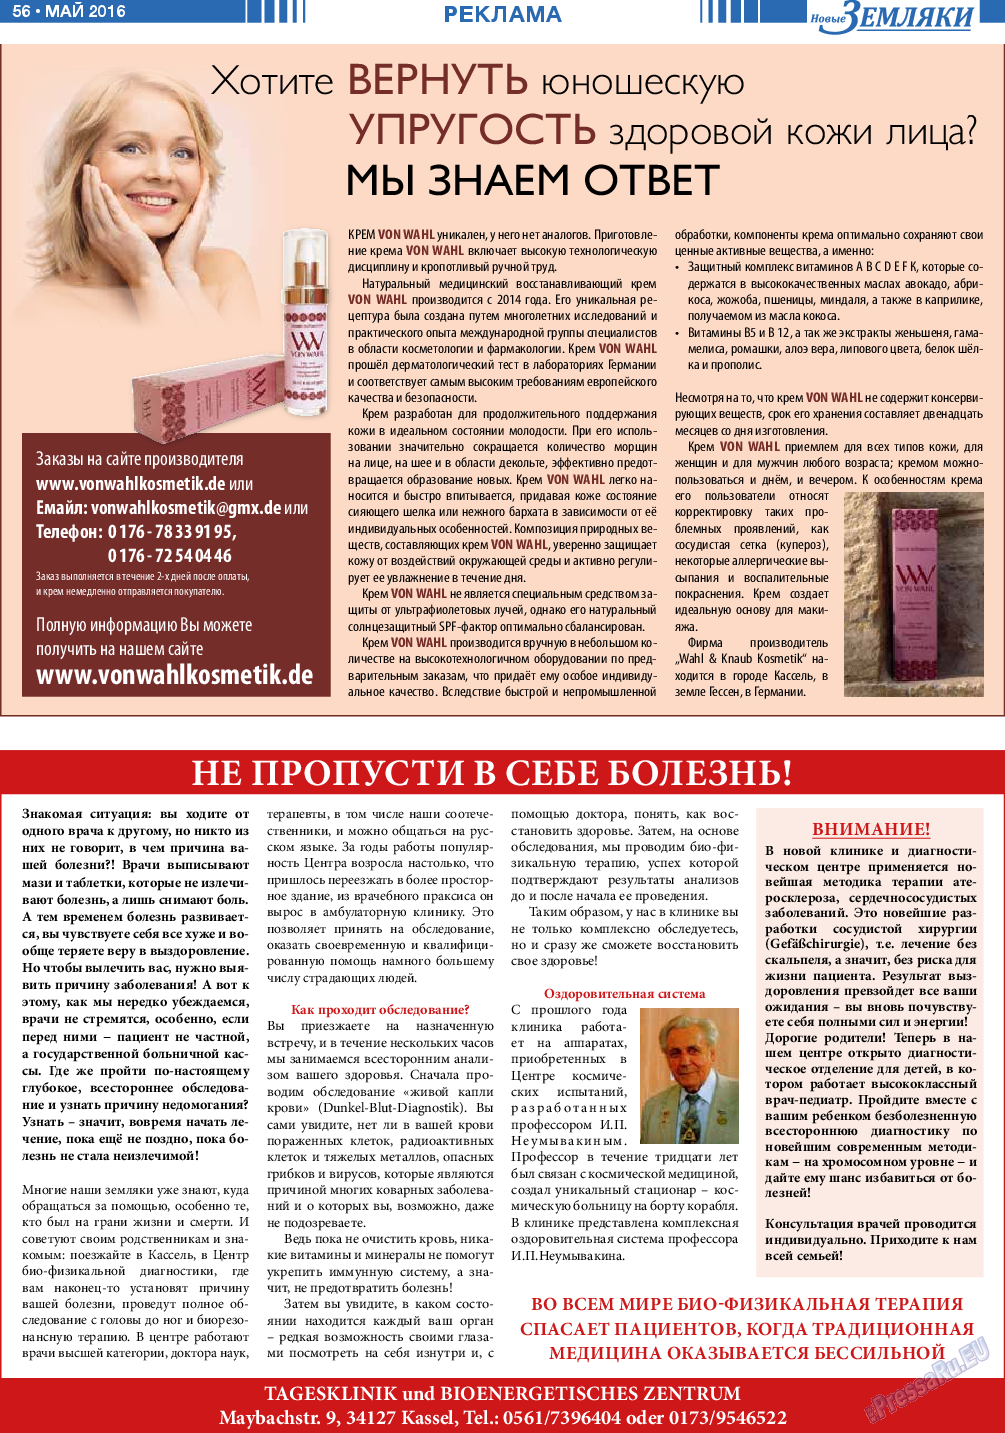 Новые Земляки, газета. 2016 №5 стр.56